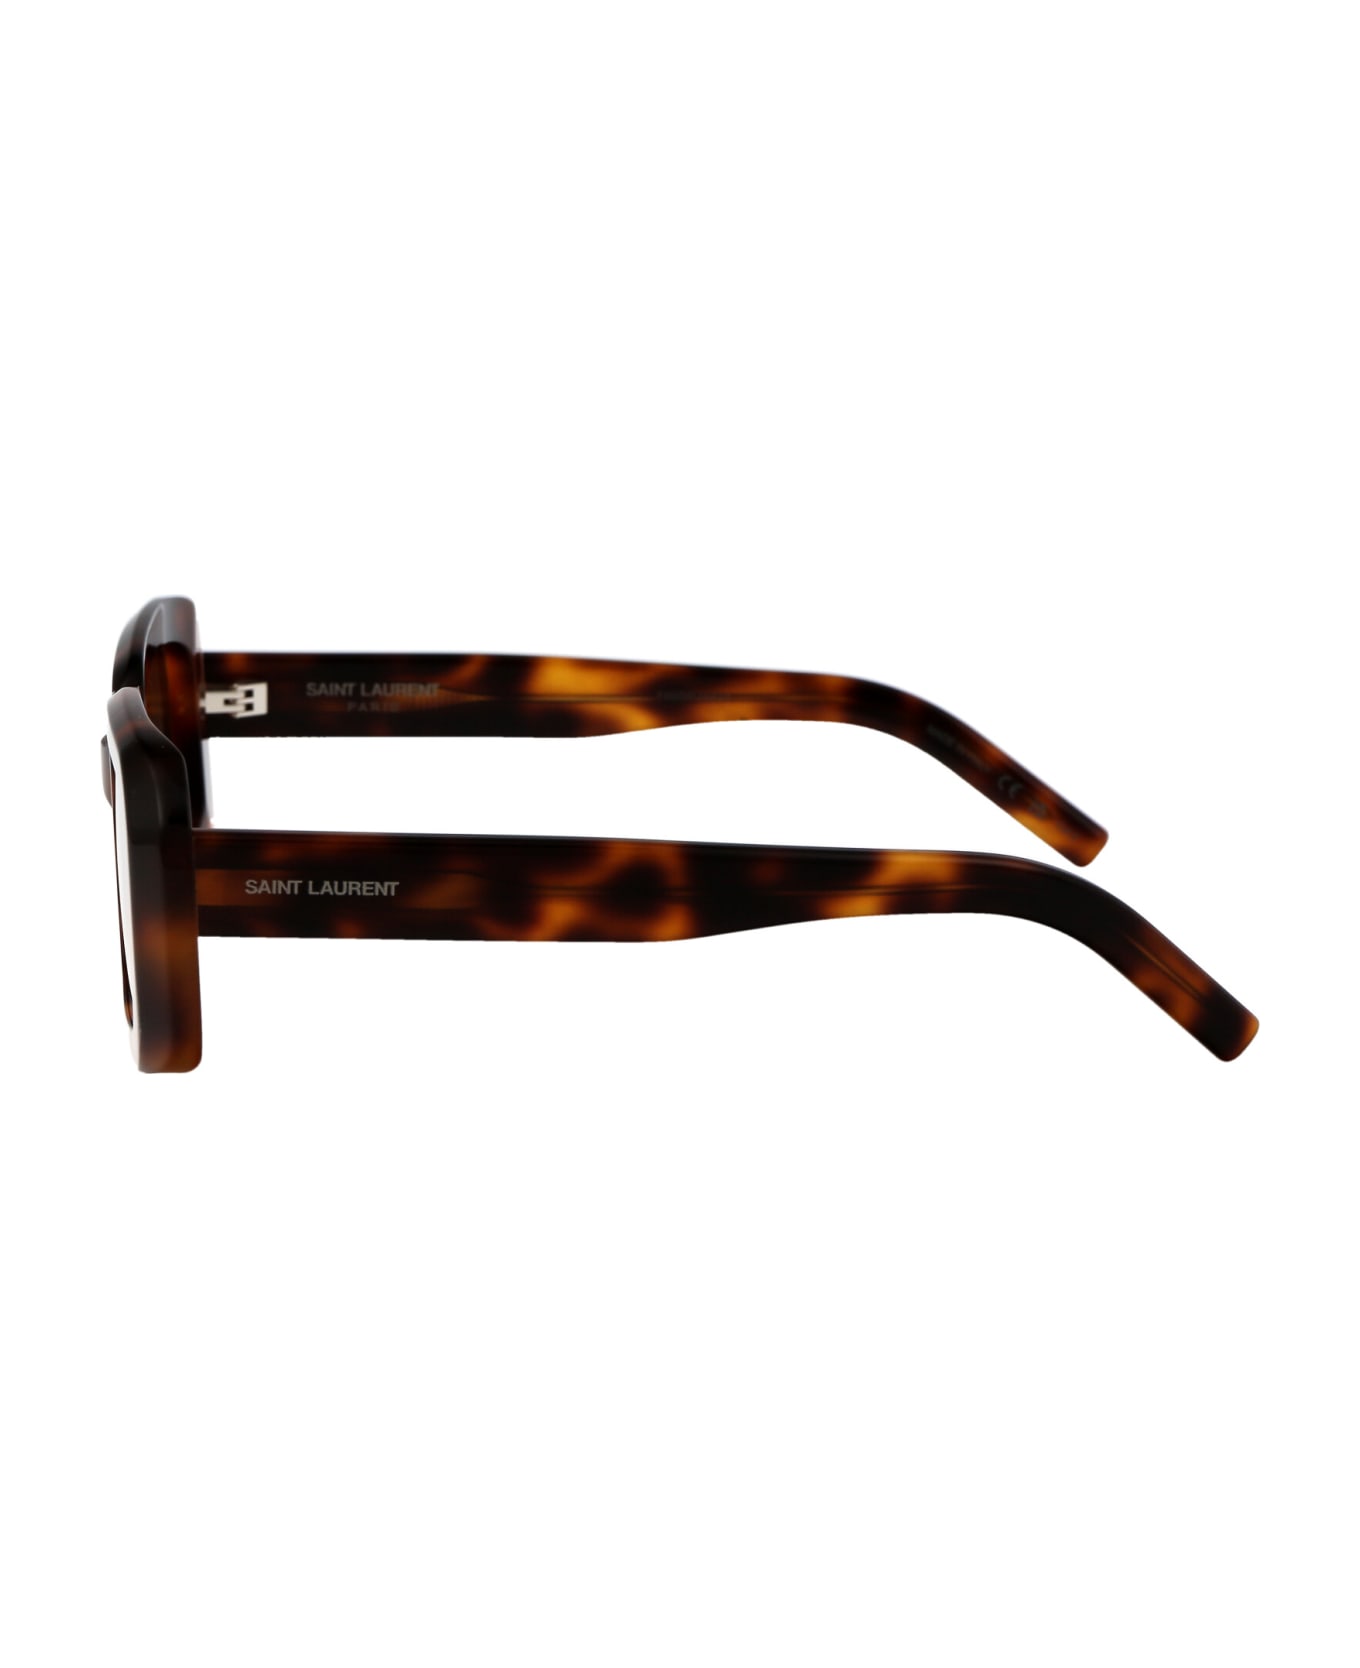 Saint Laurent Eyewear Sl 534 Sunrise Sunglasses - 012 HAVANA HAVANA BROWN サングラス